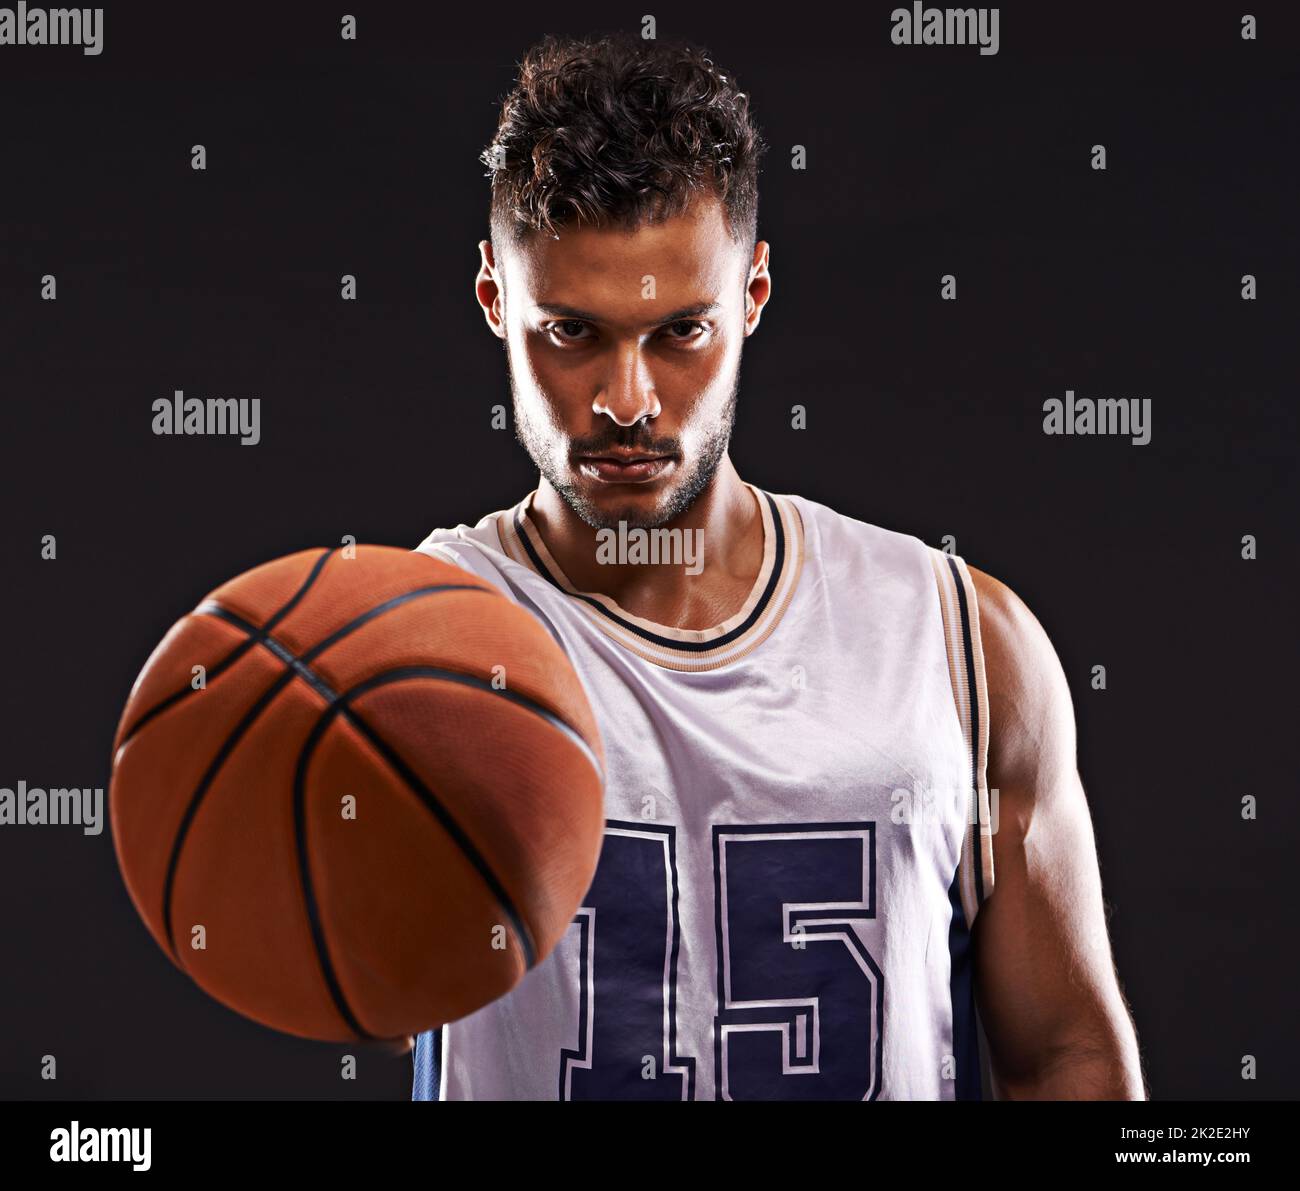 Prêt à jouer. Photo studio d'un joueur de basket-ball sur fond noir. Banque D'Images